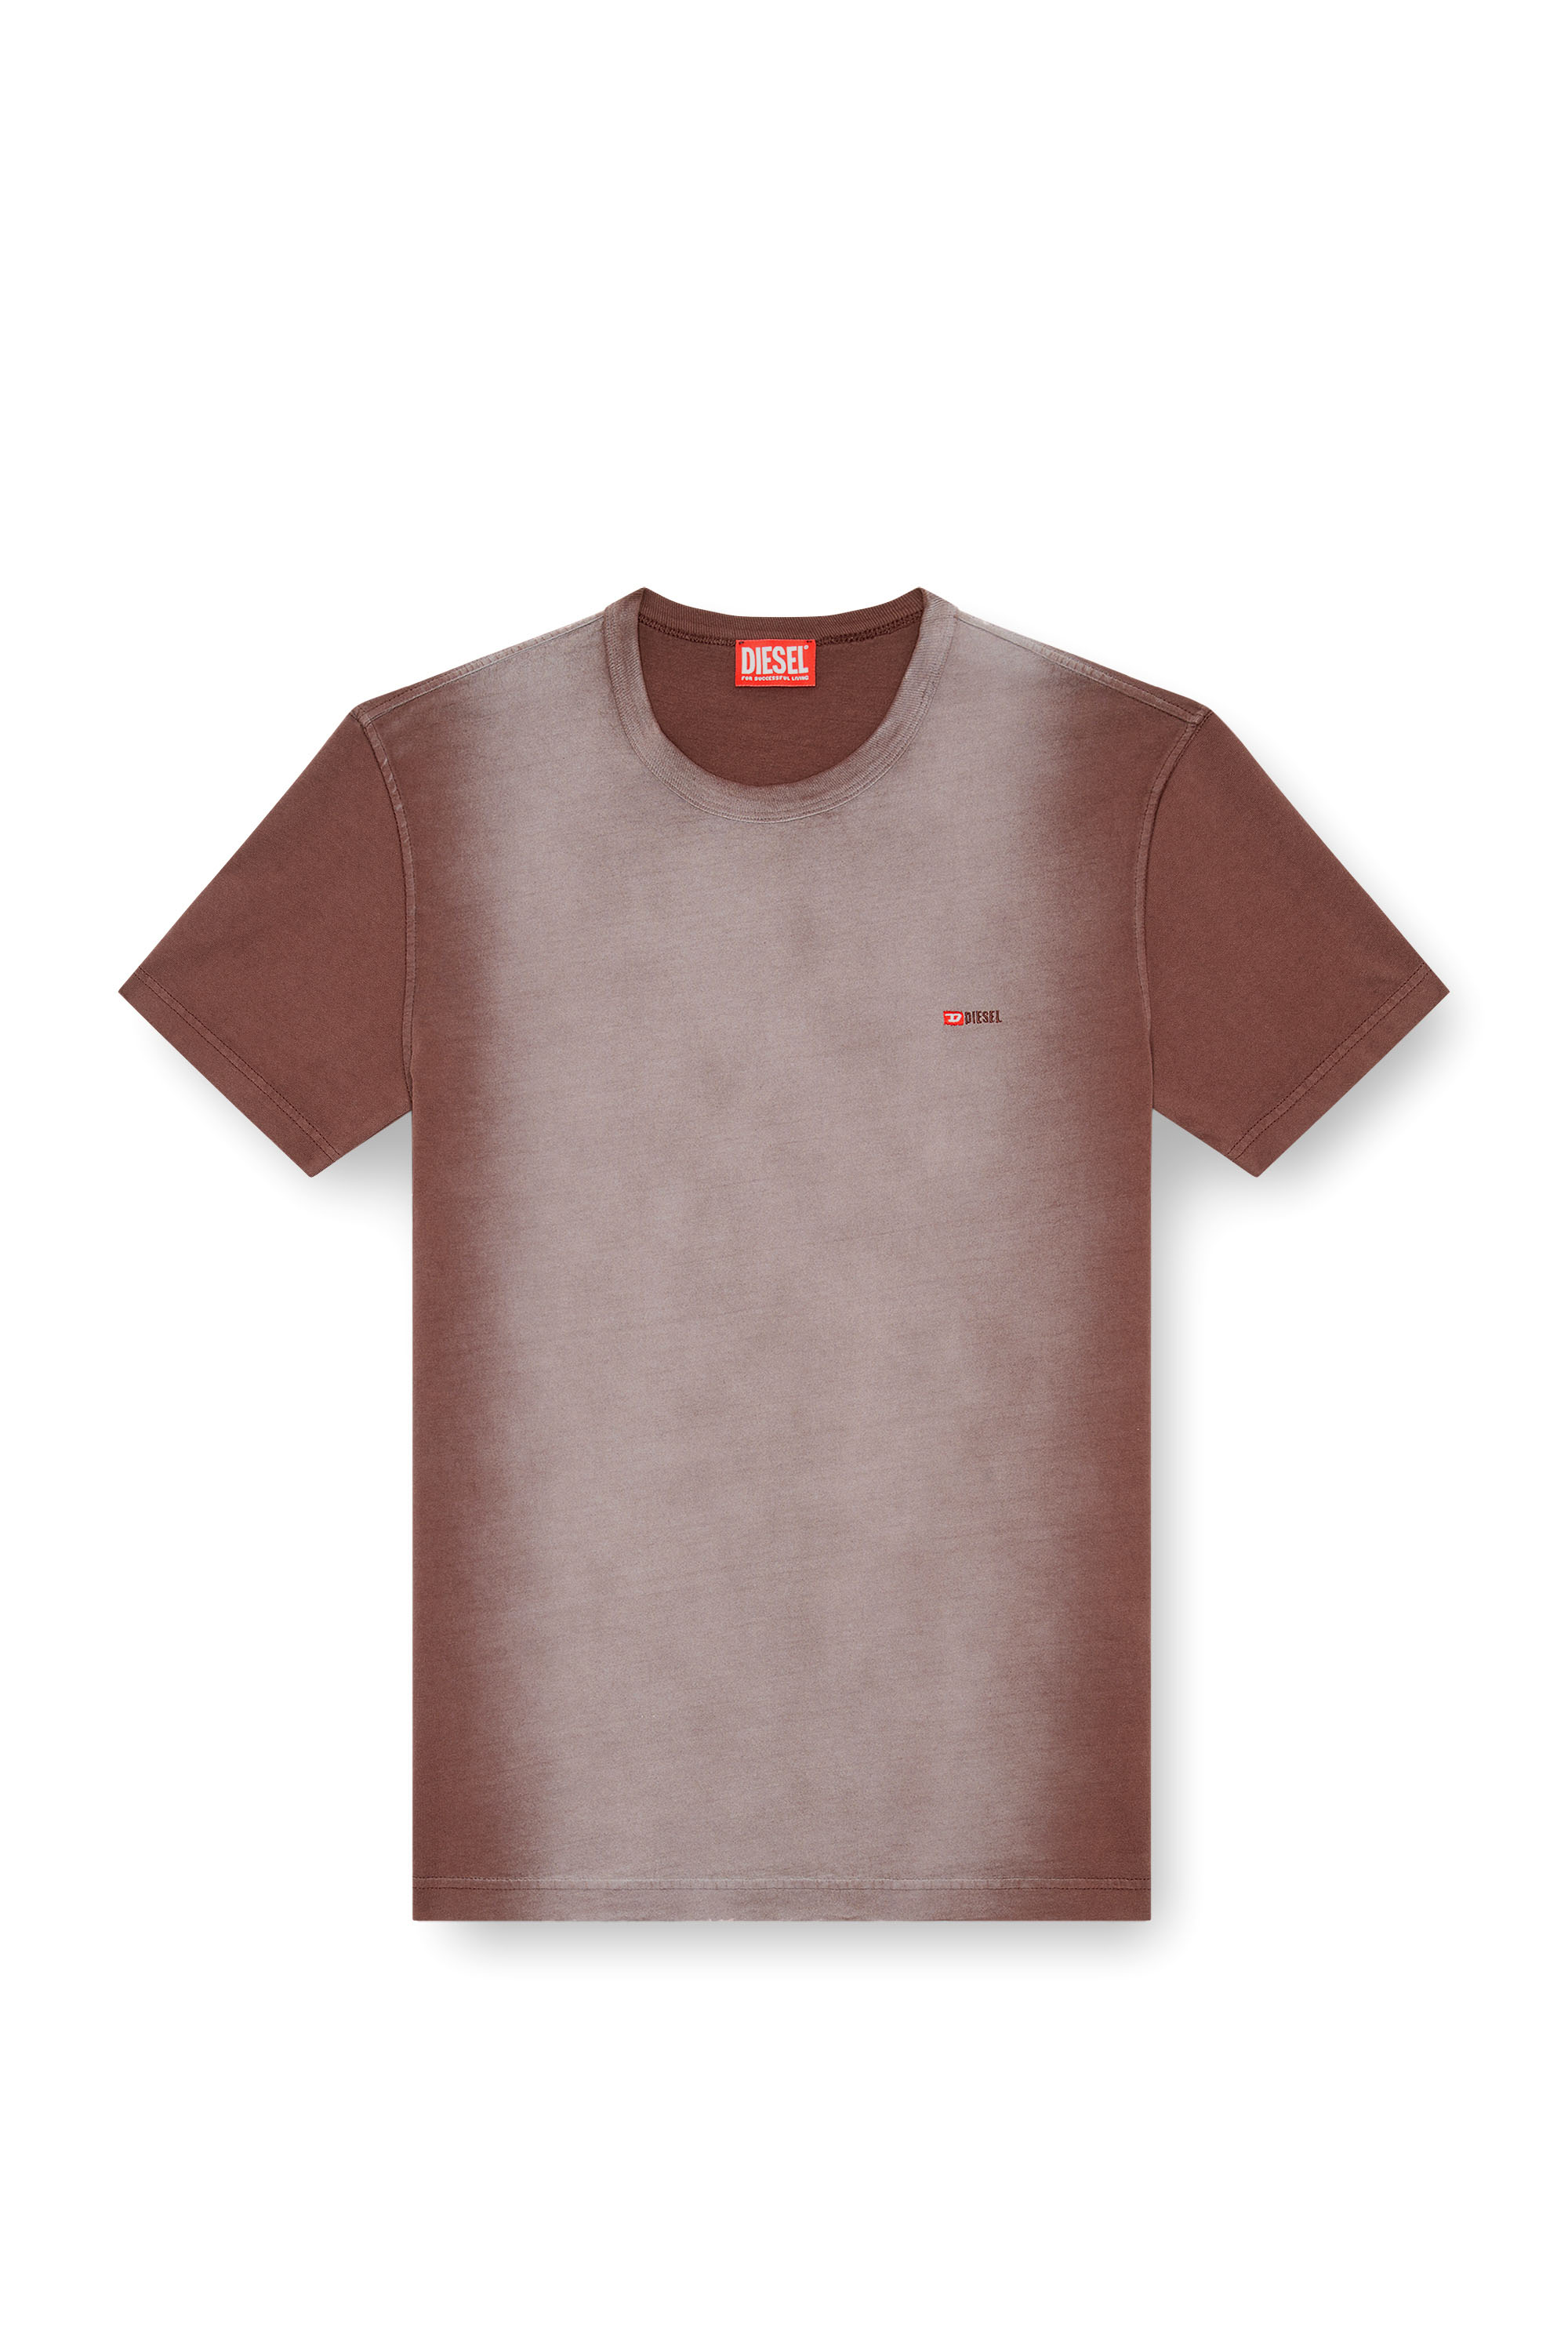 Diesel - T-ADJUST-Q2, Hombre Camiseta en tejido de algodón rociado in Marrón - Image 3